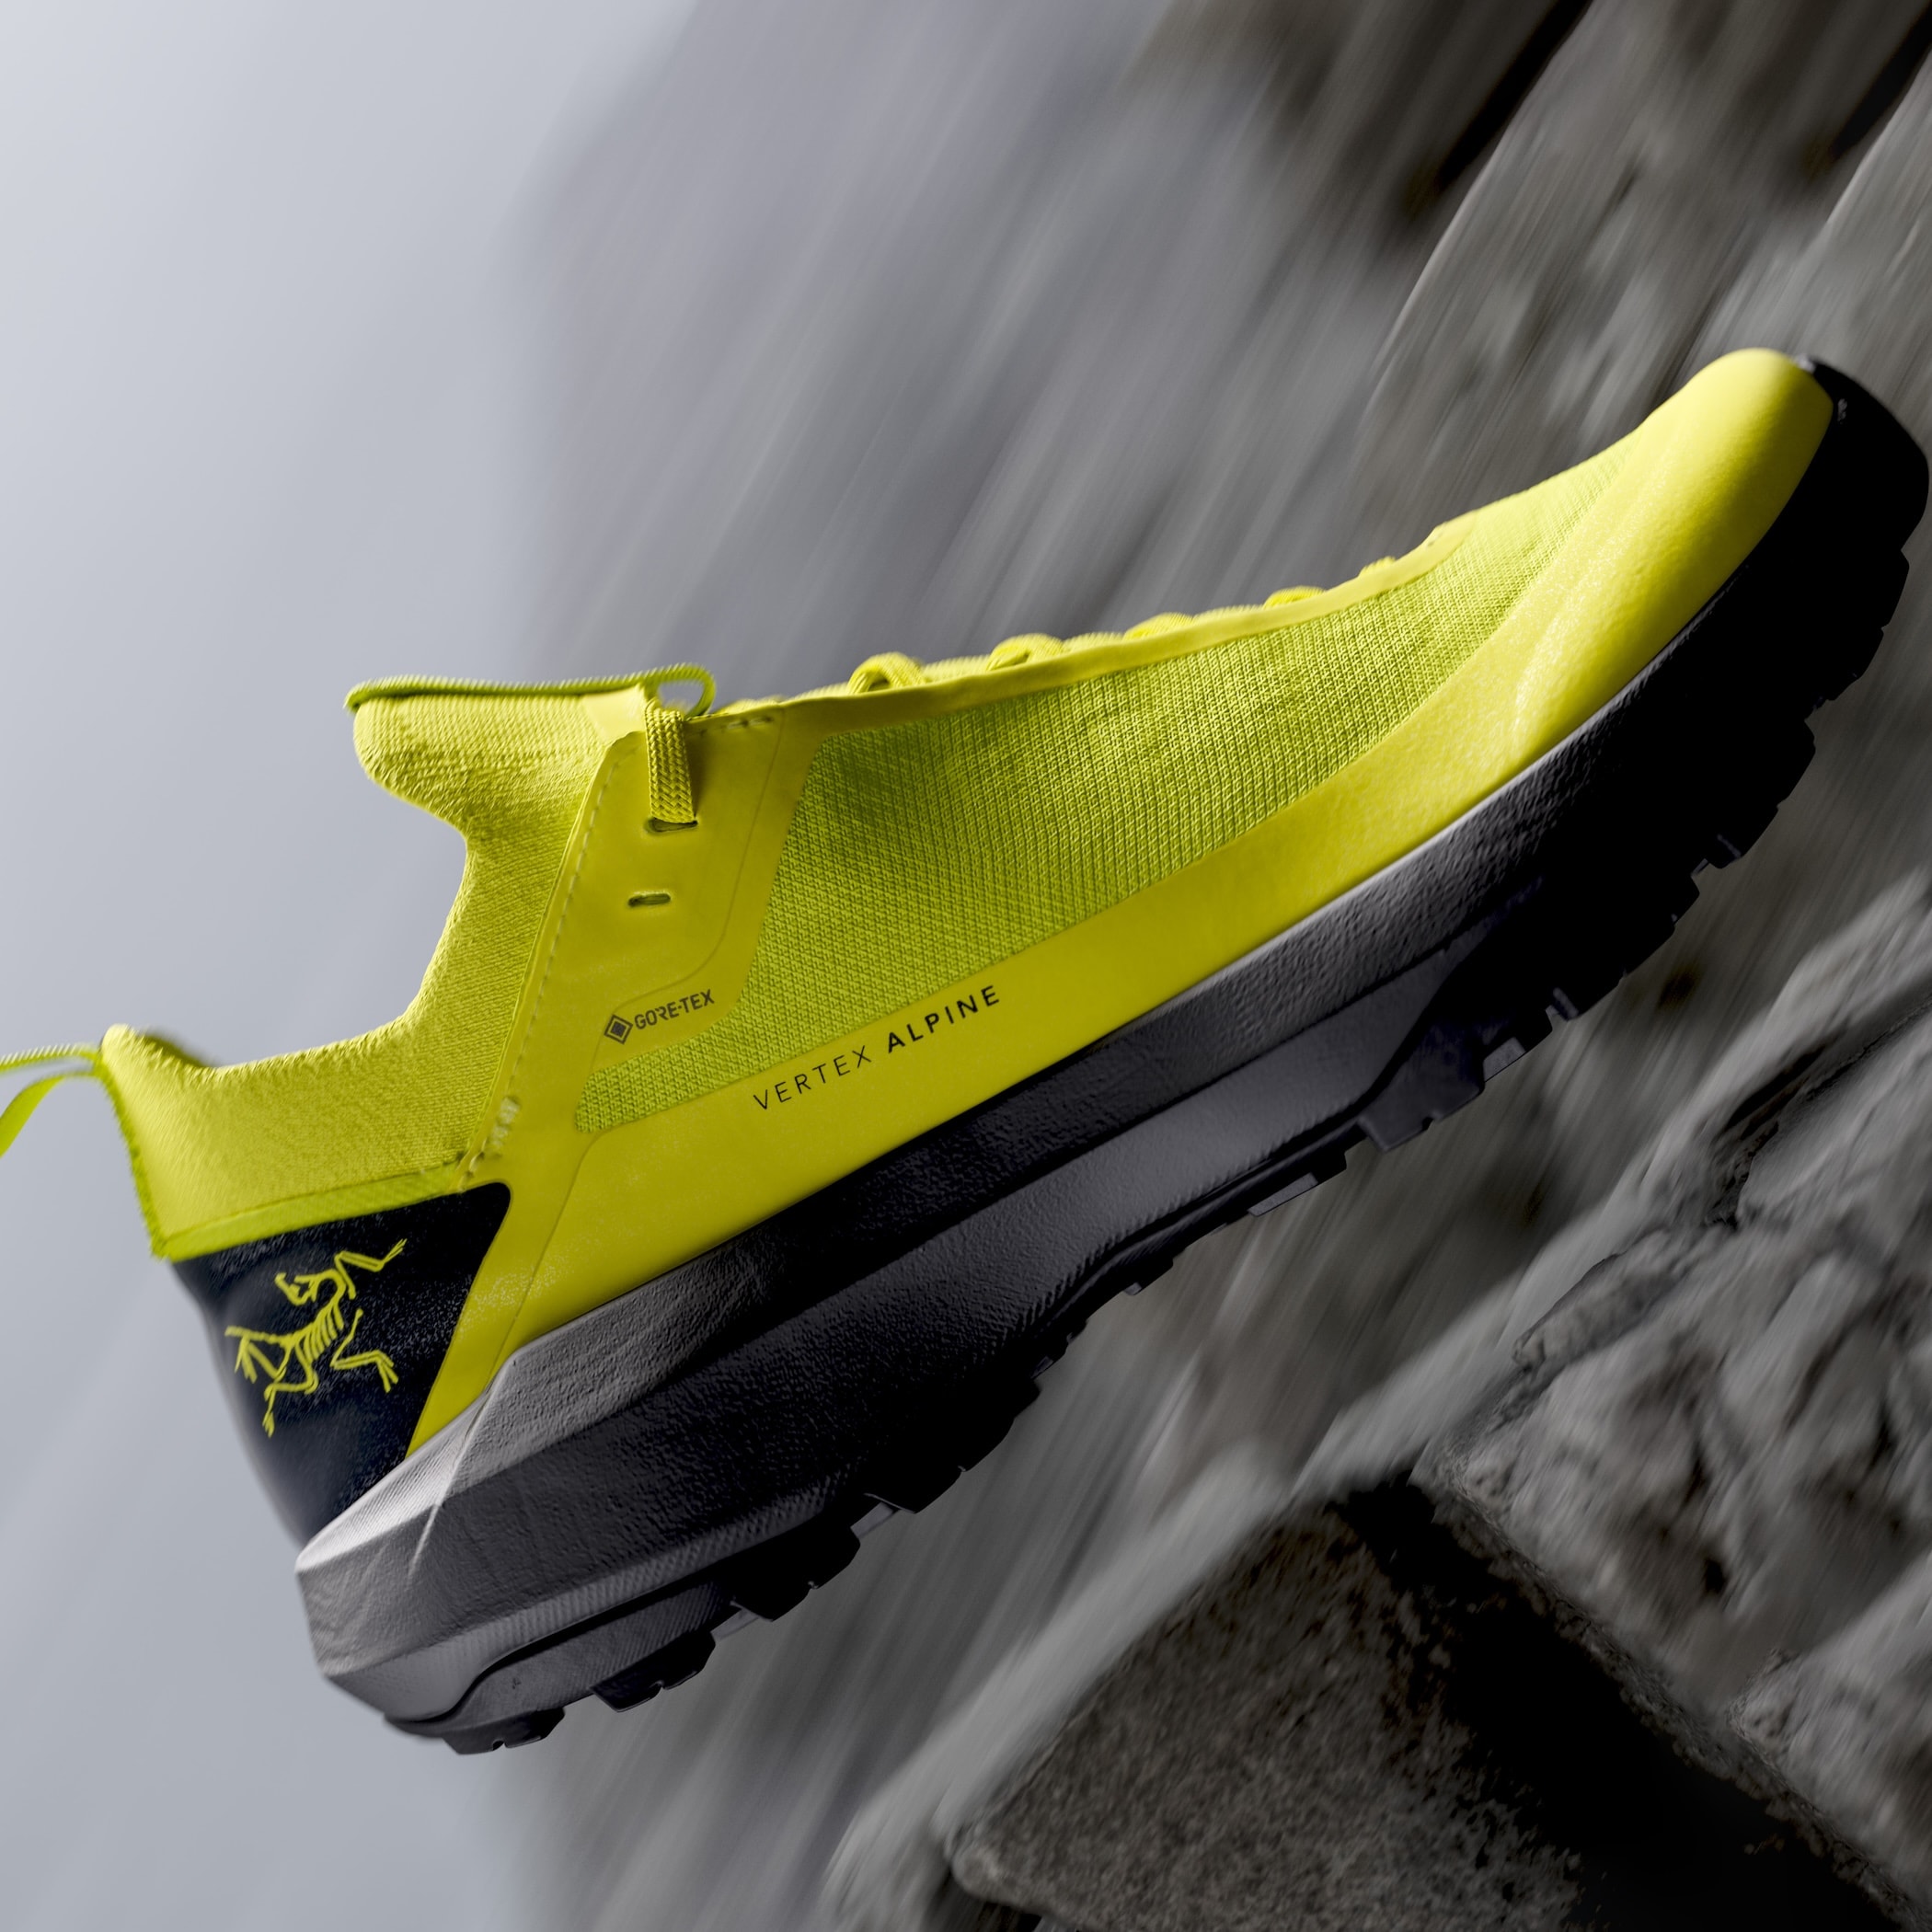 ARC'TERYX 推出首个自主设计鞋履系列